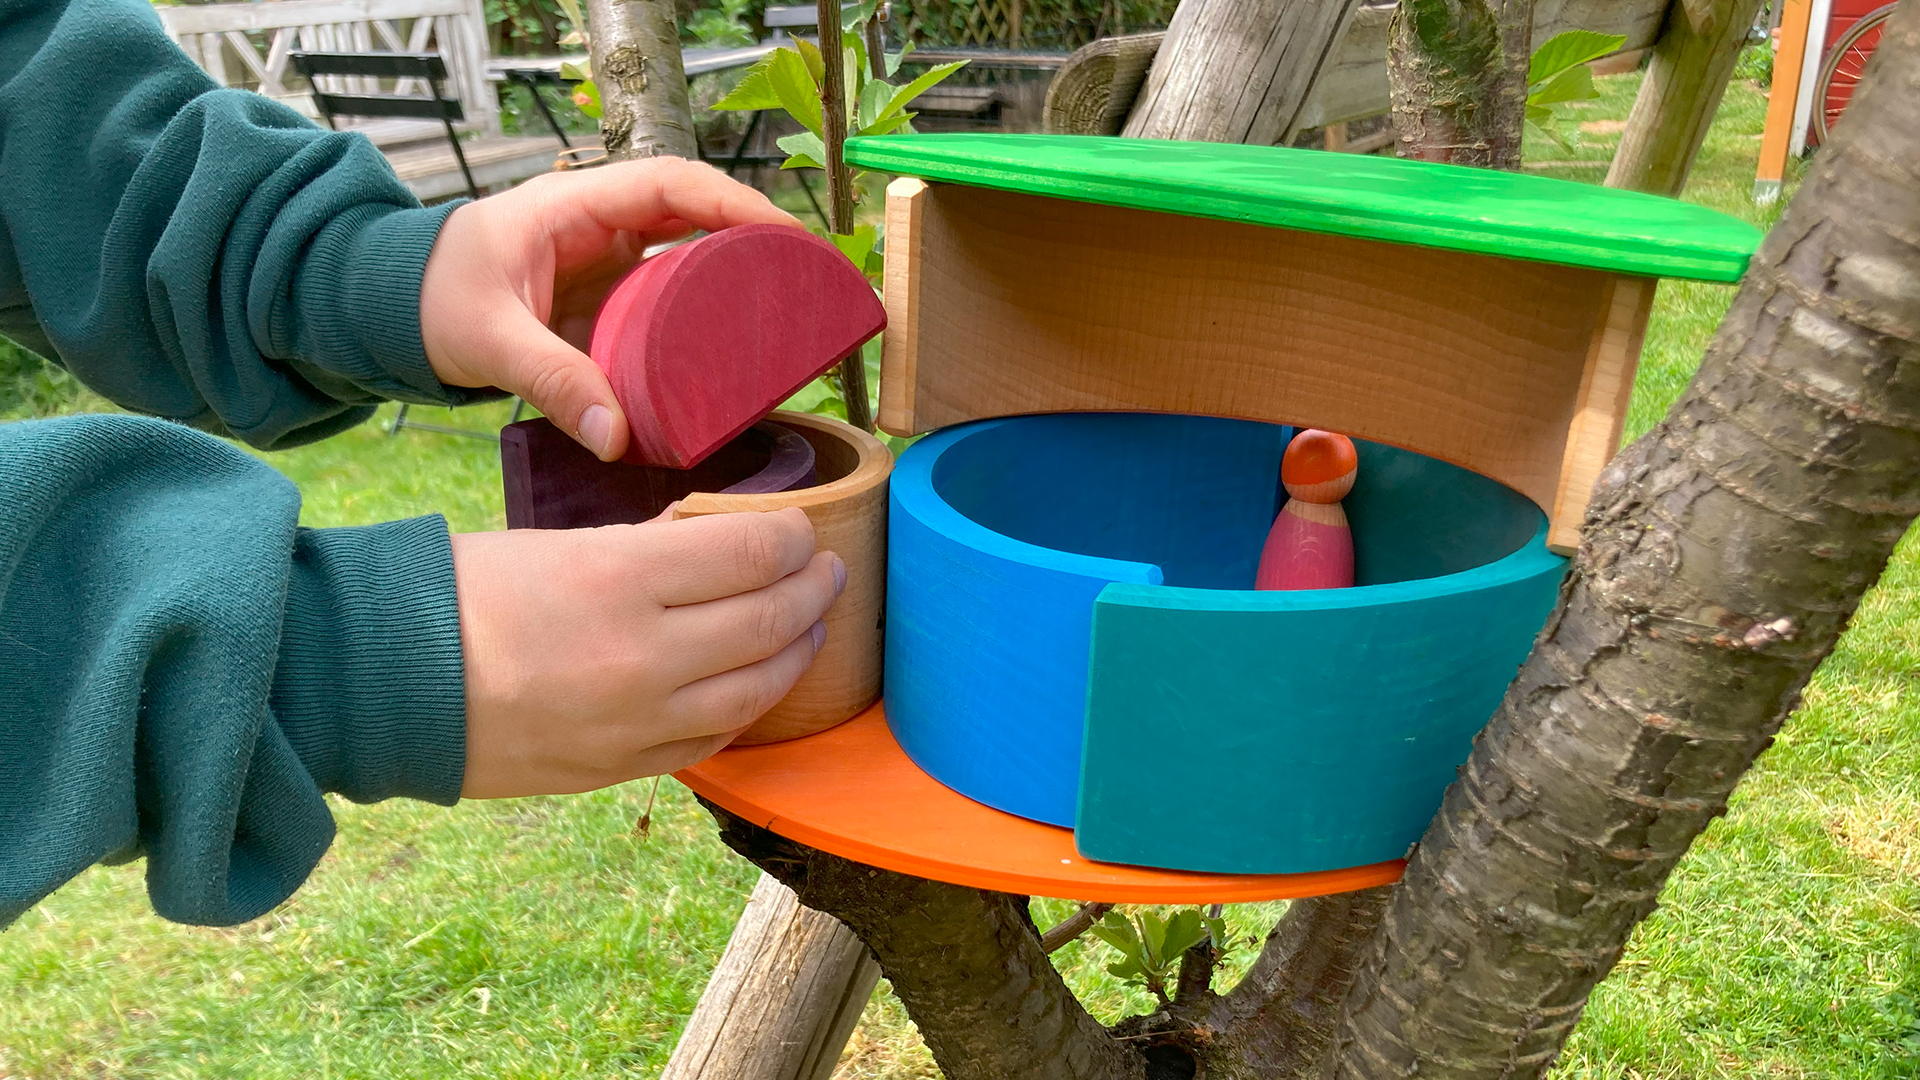 Kinderhände bauen in einem Baum mit Holzspielsachen ein kleines Baumhaus.